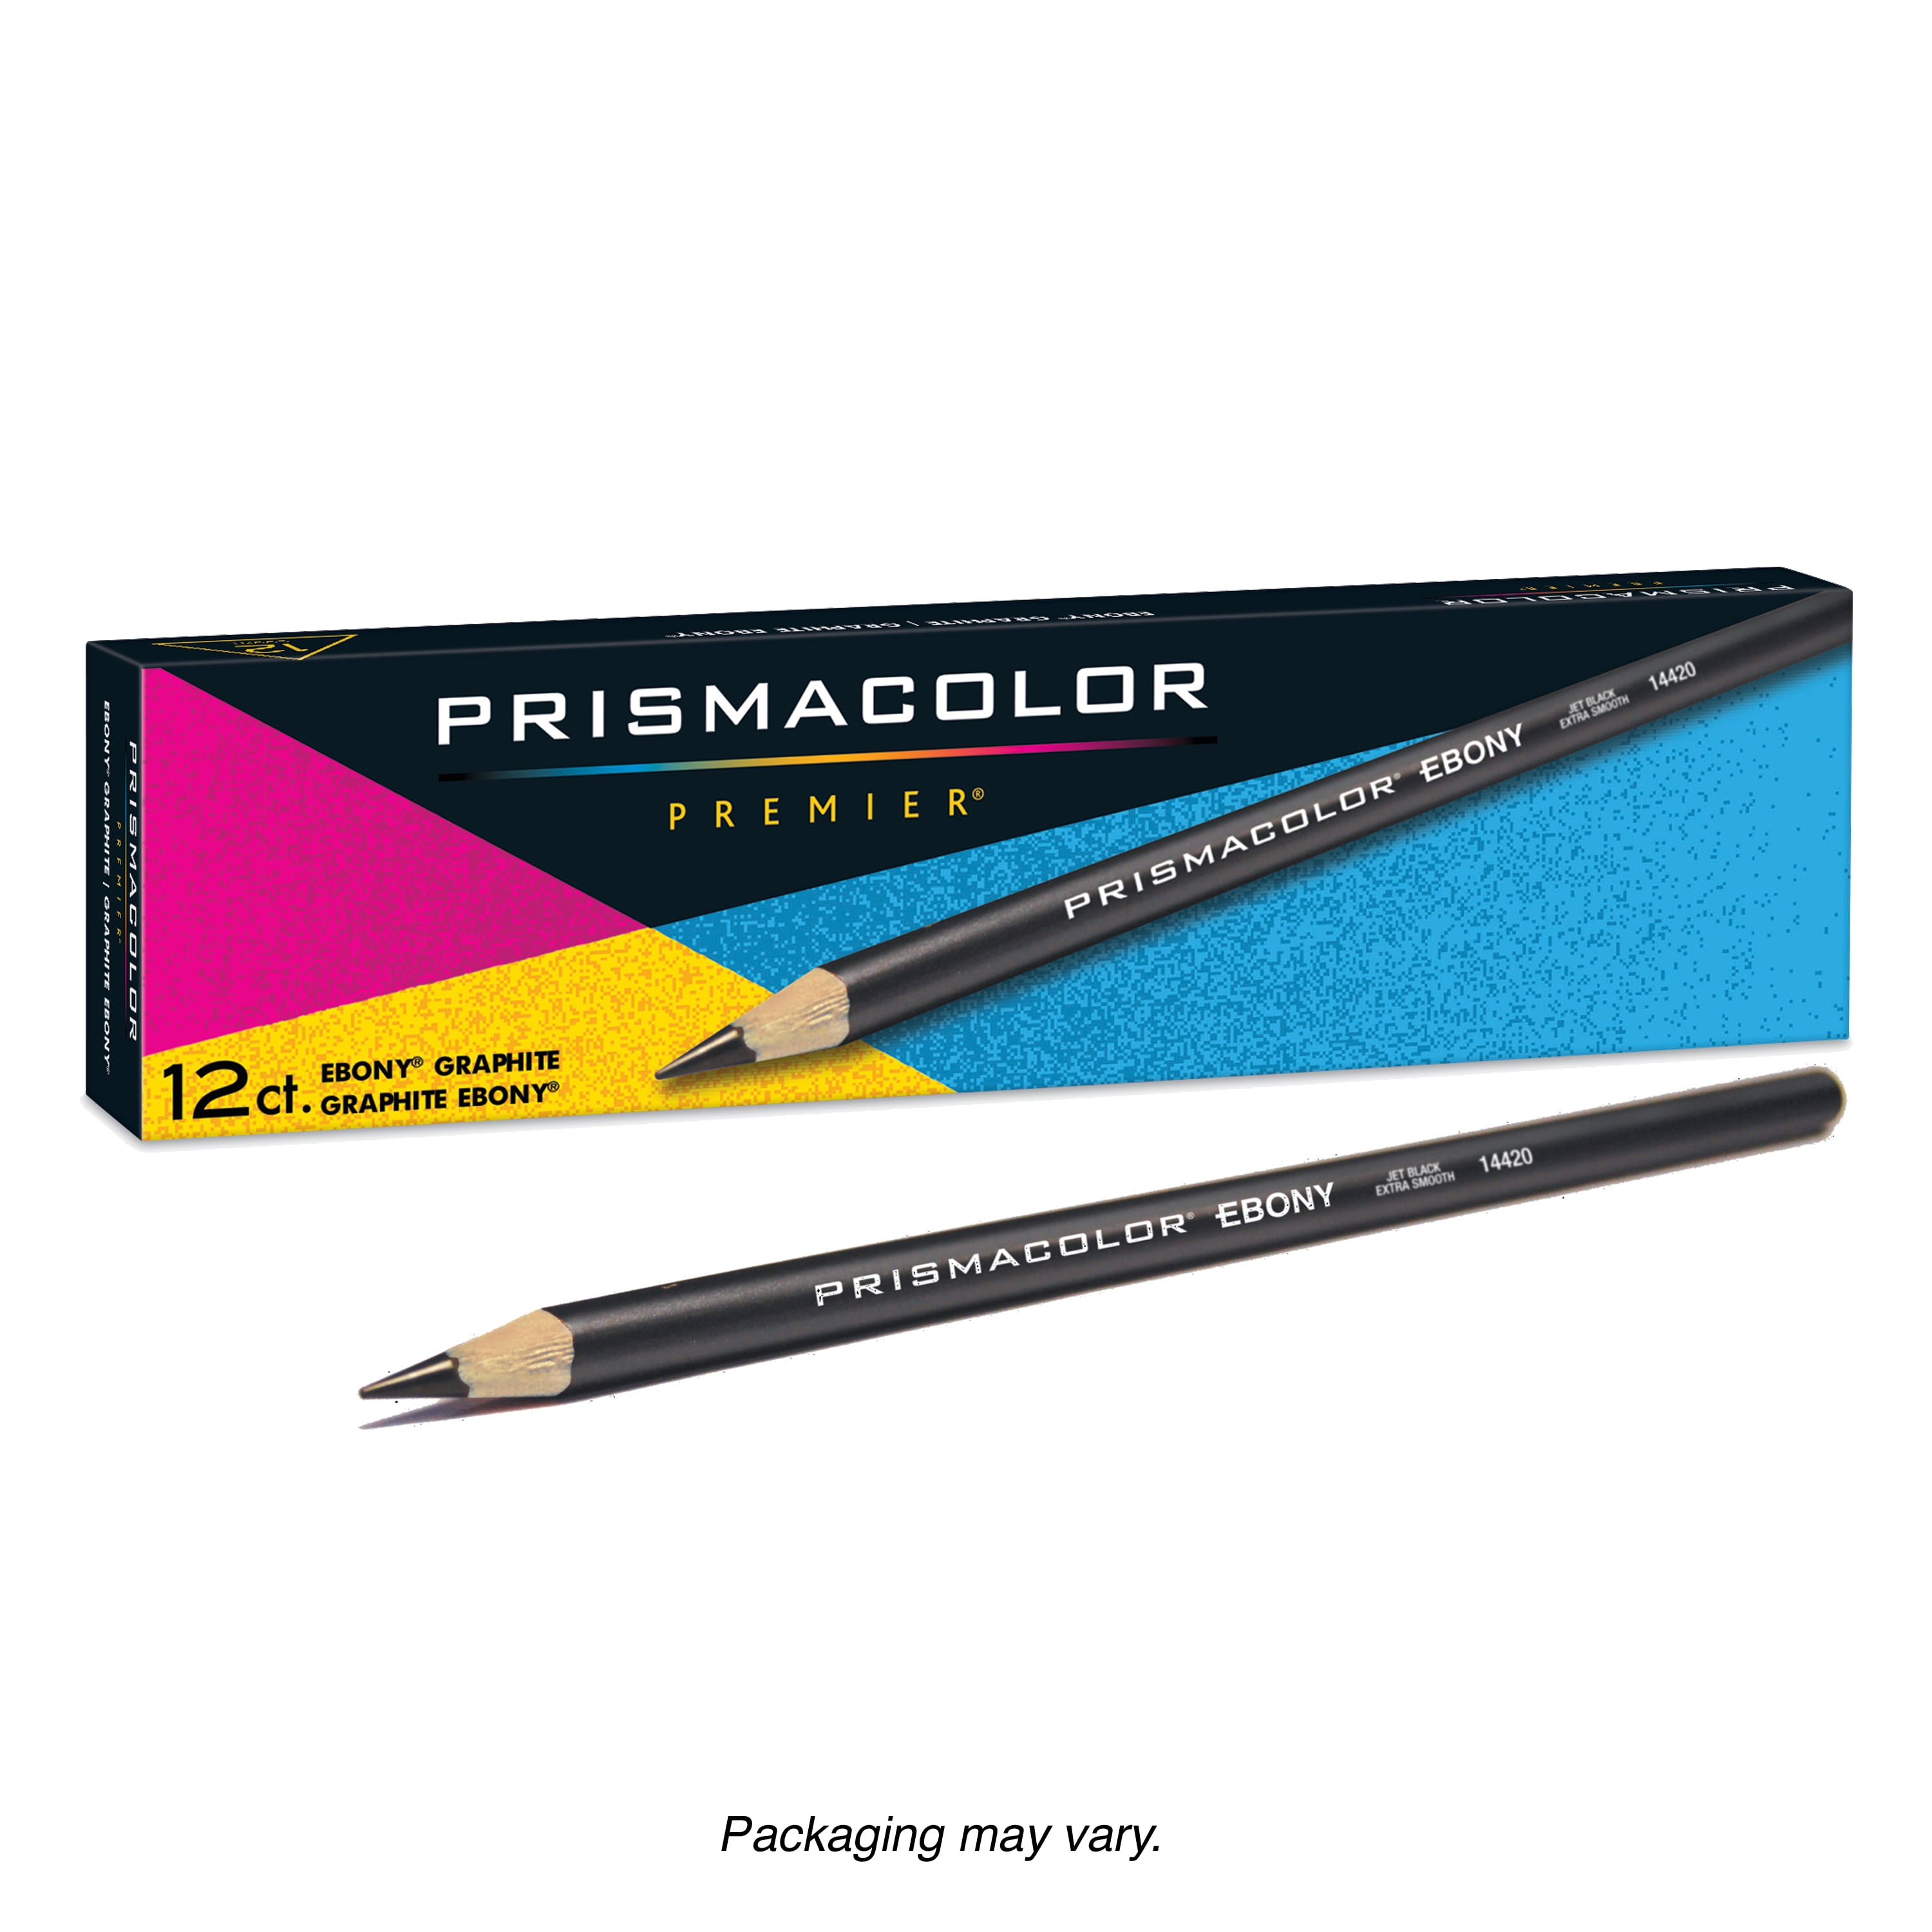 Prisma ebony pencil